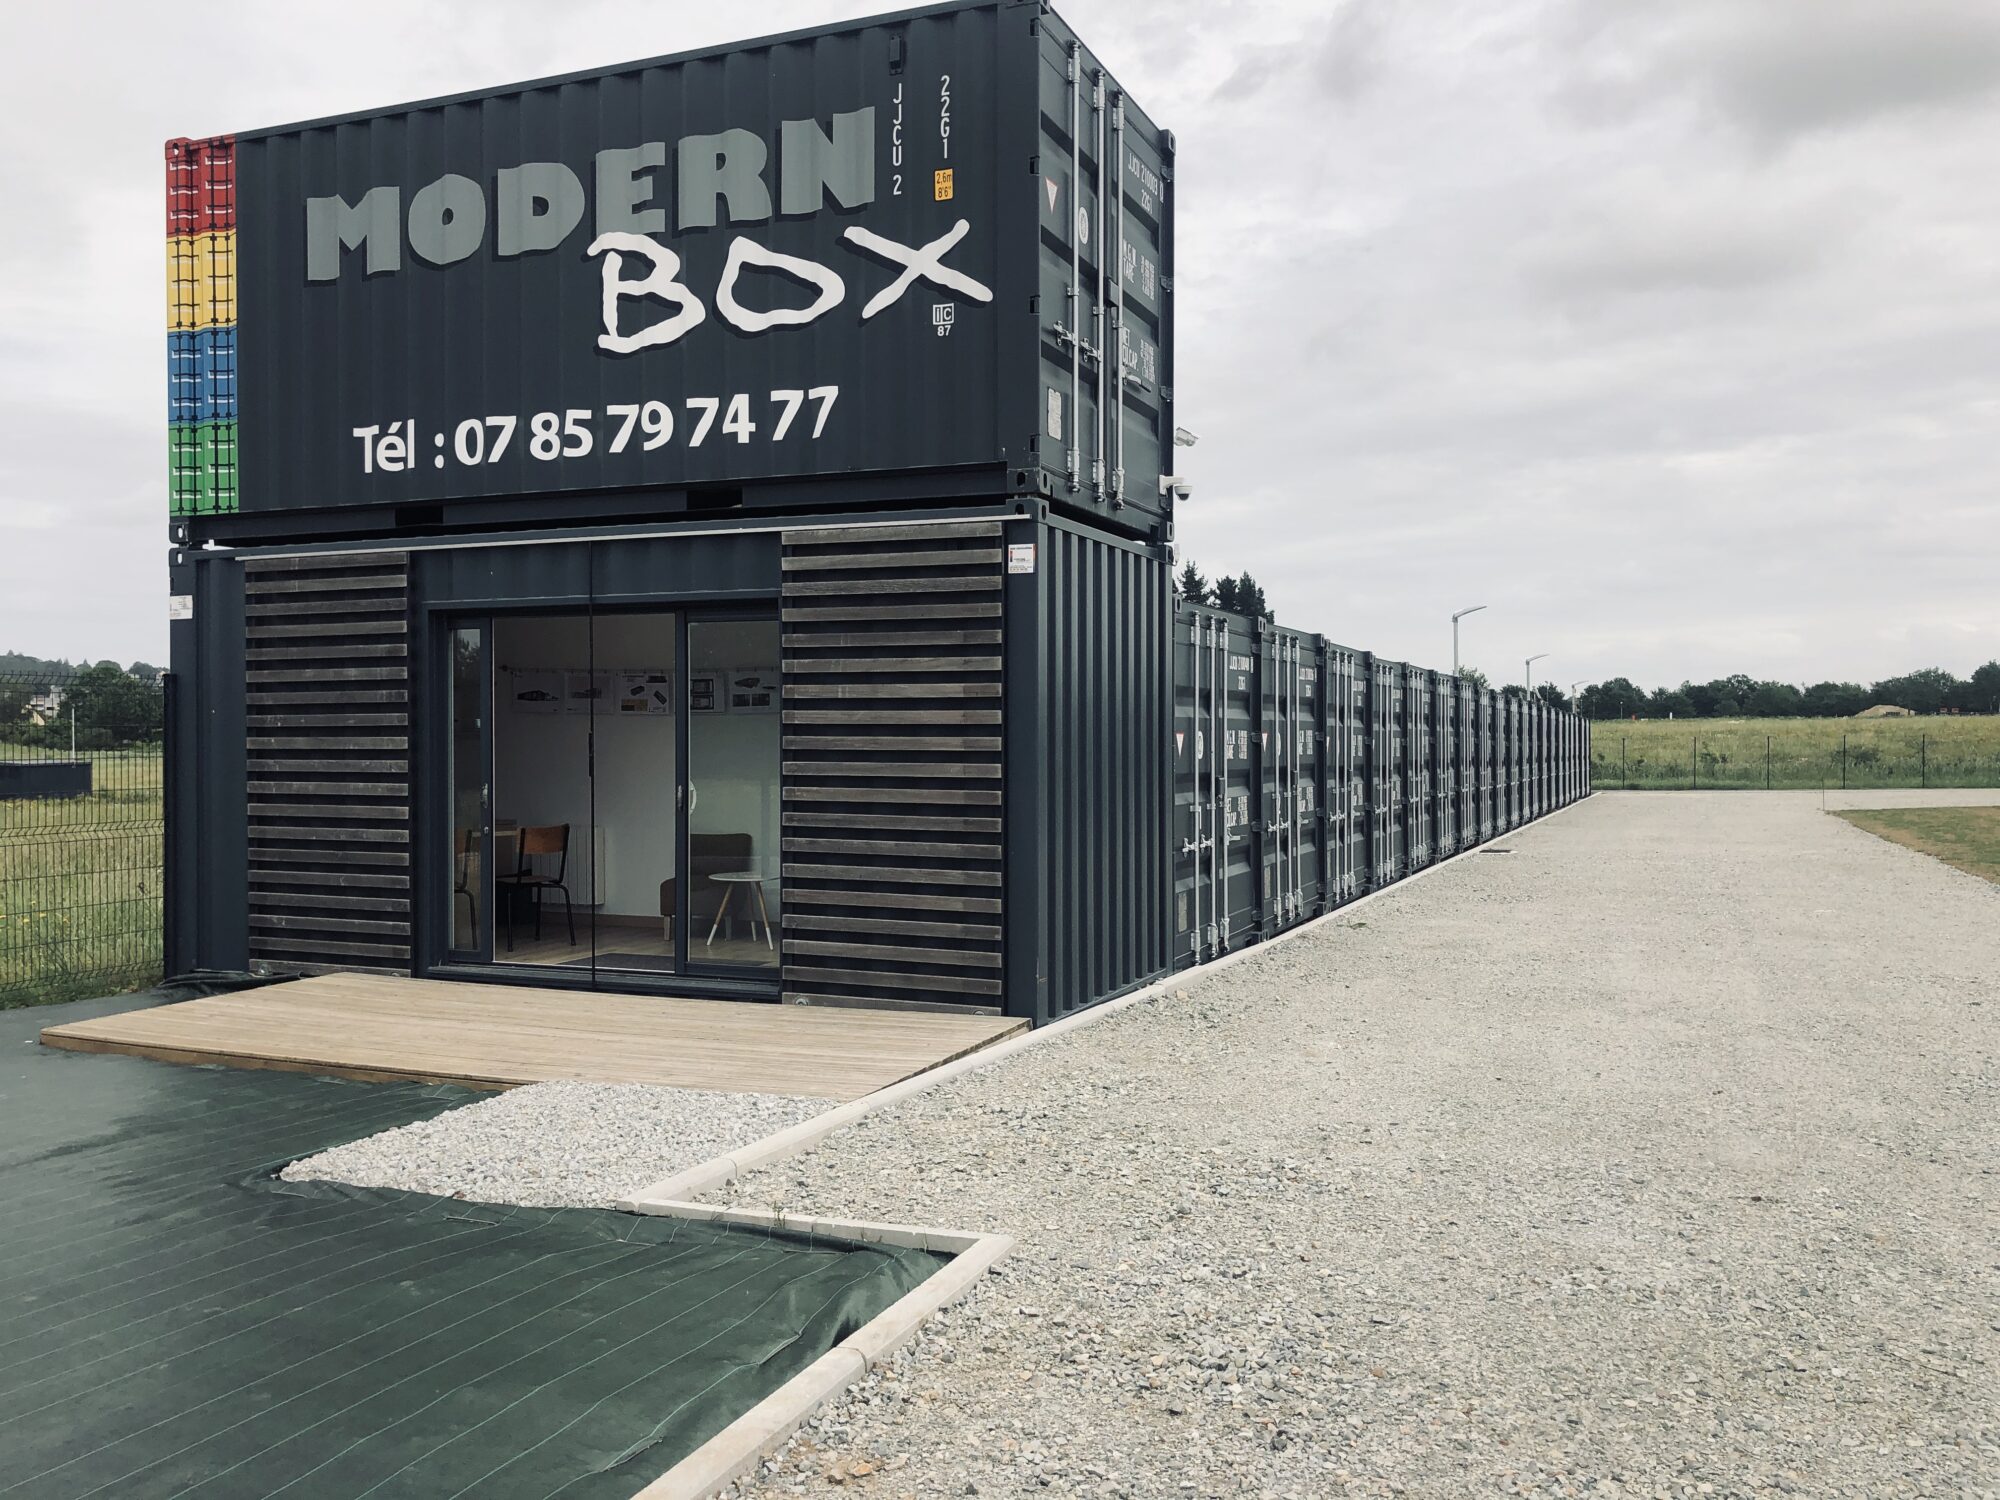 Modern box2